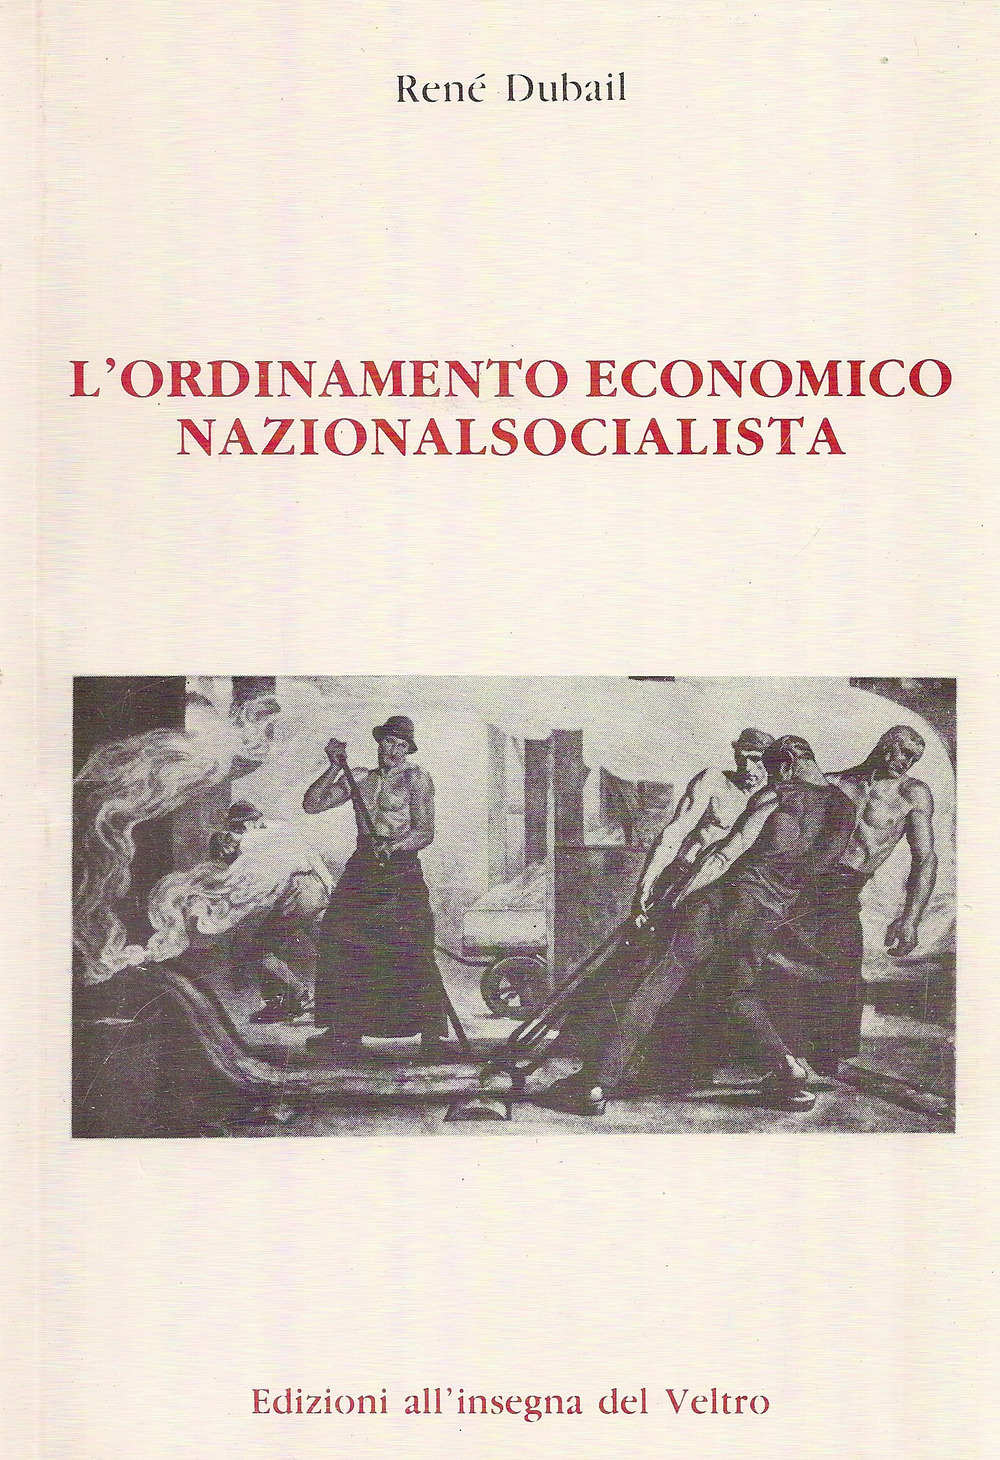 L'ordinamento economico nazionalsocialista